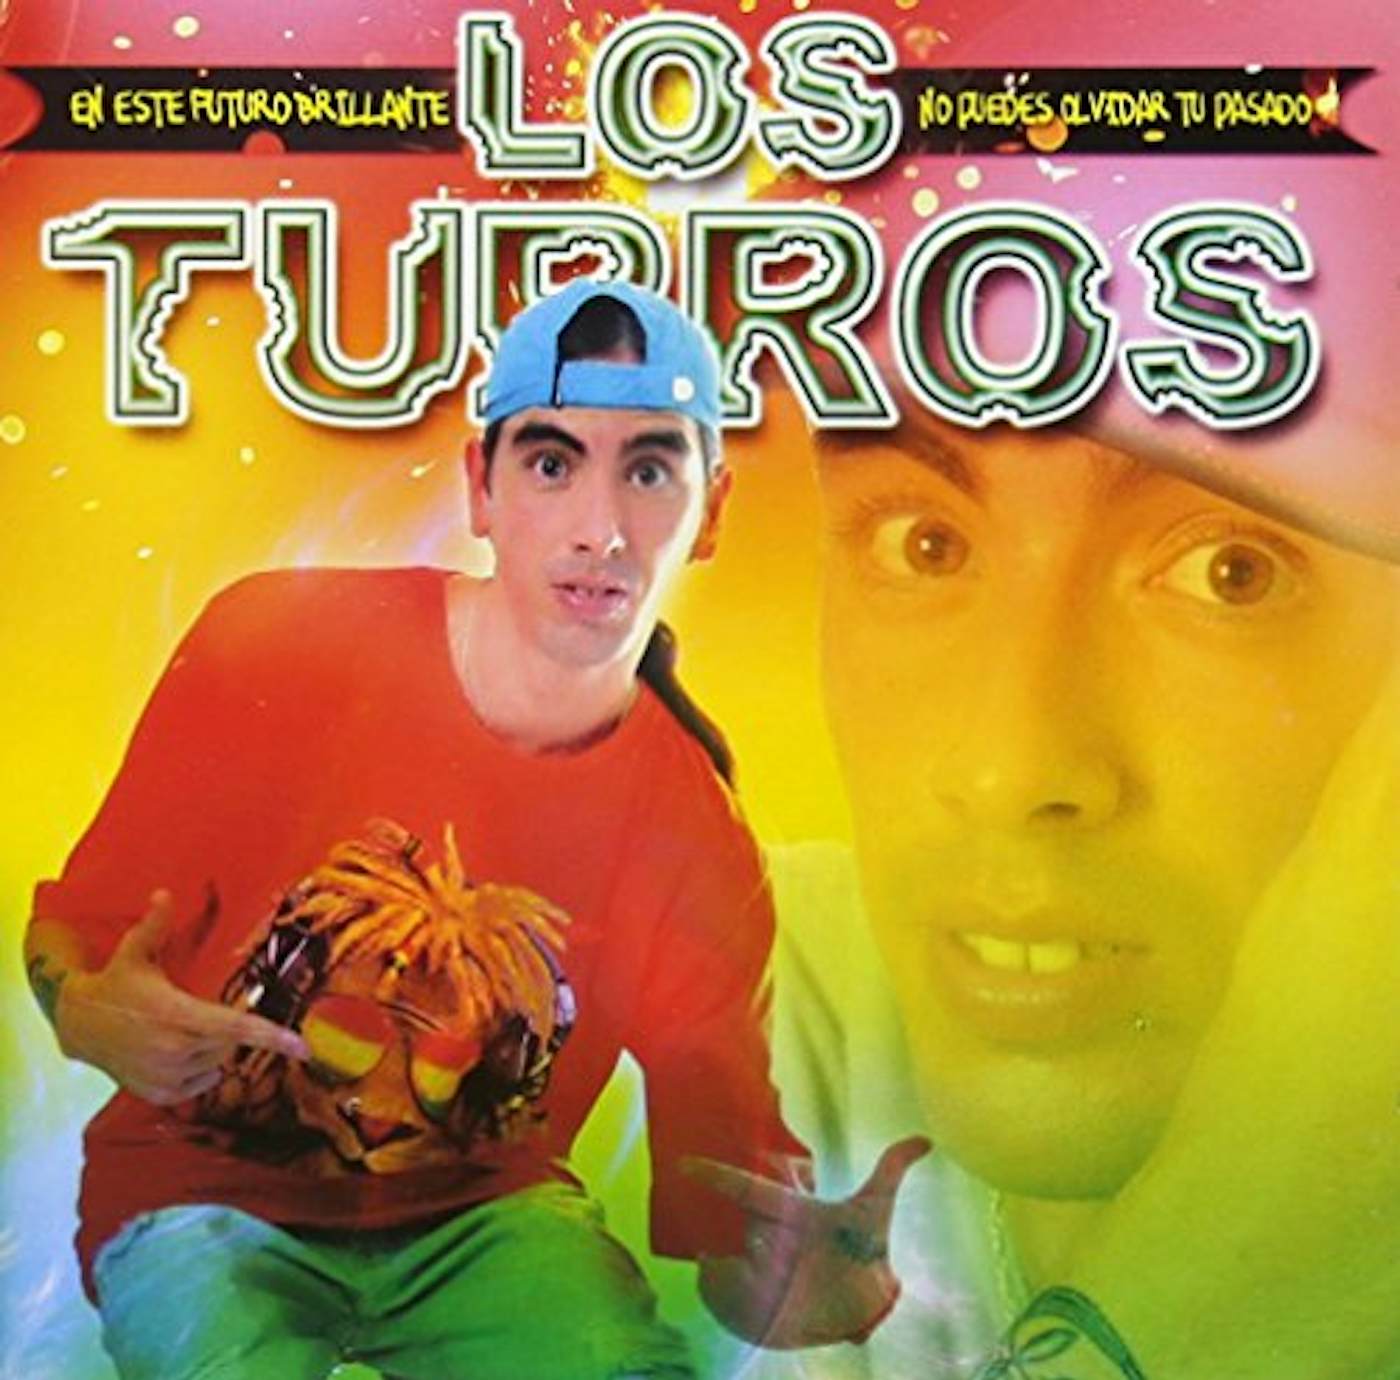 El poder de la guadaña by Pibes Chorros (Album, Cumbia villera